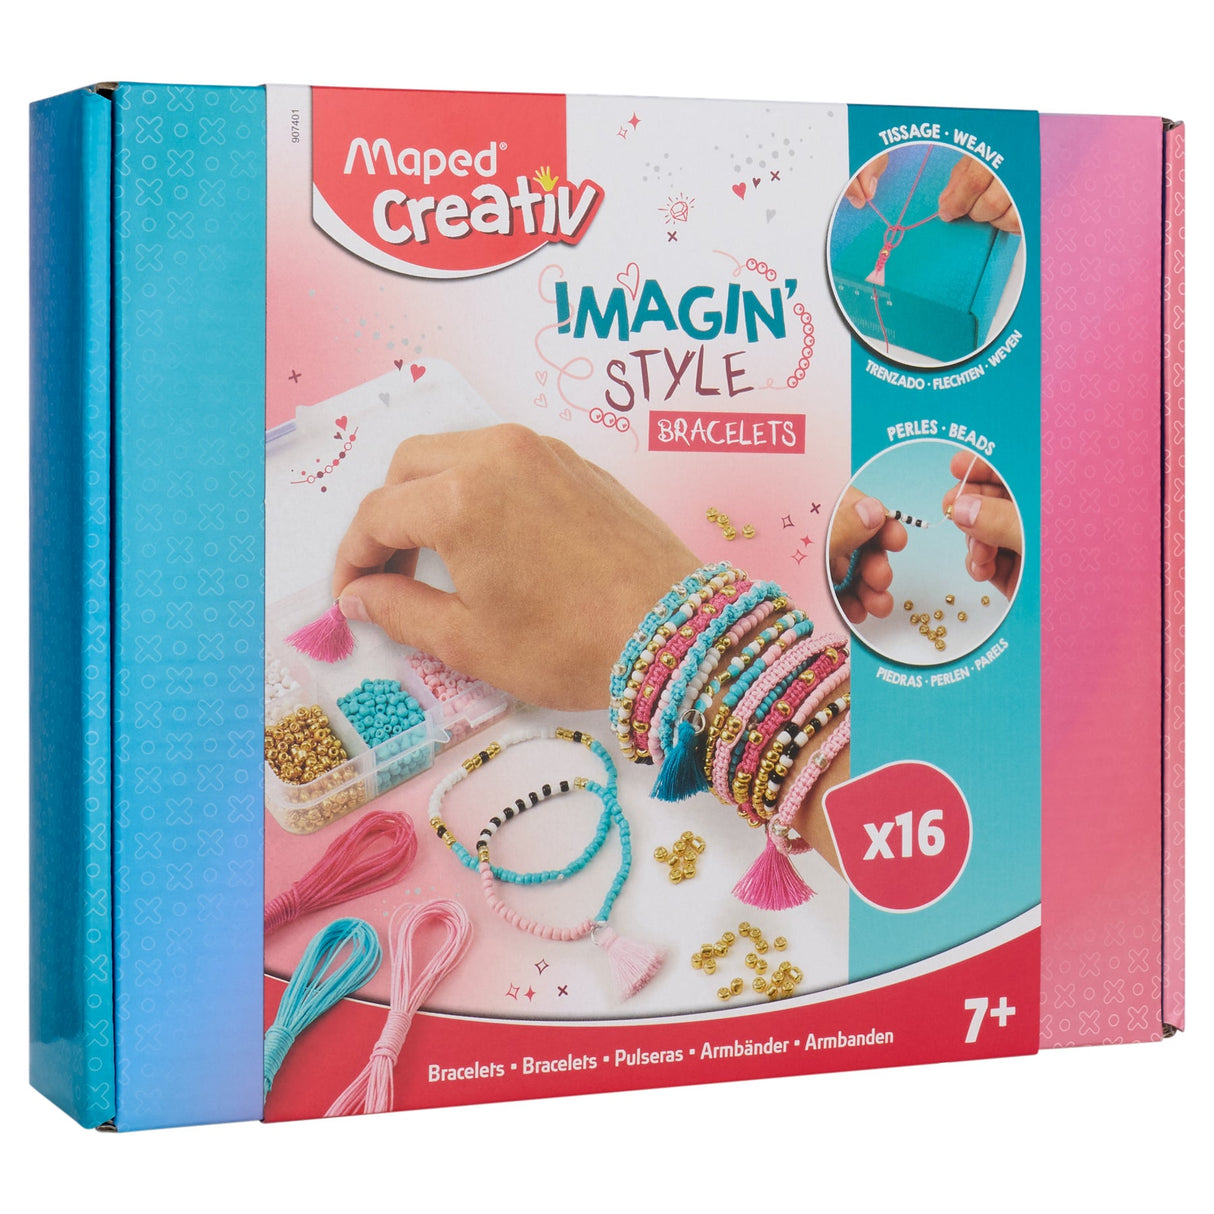 Maped Imagin' Style Bracelets-Kids Art Sets-Maped|StationeryShop.co.uk